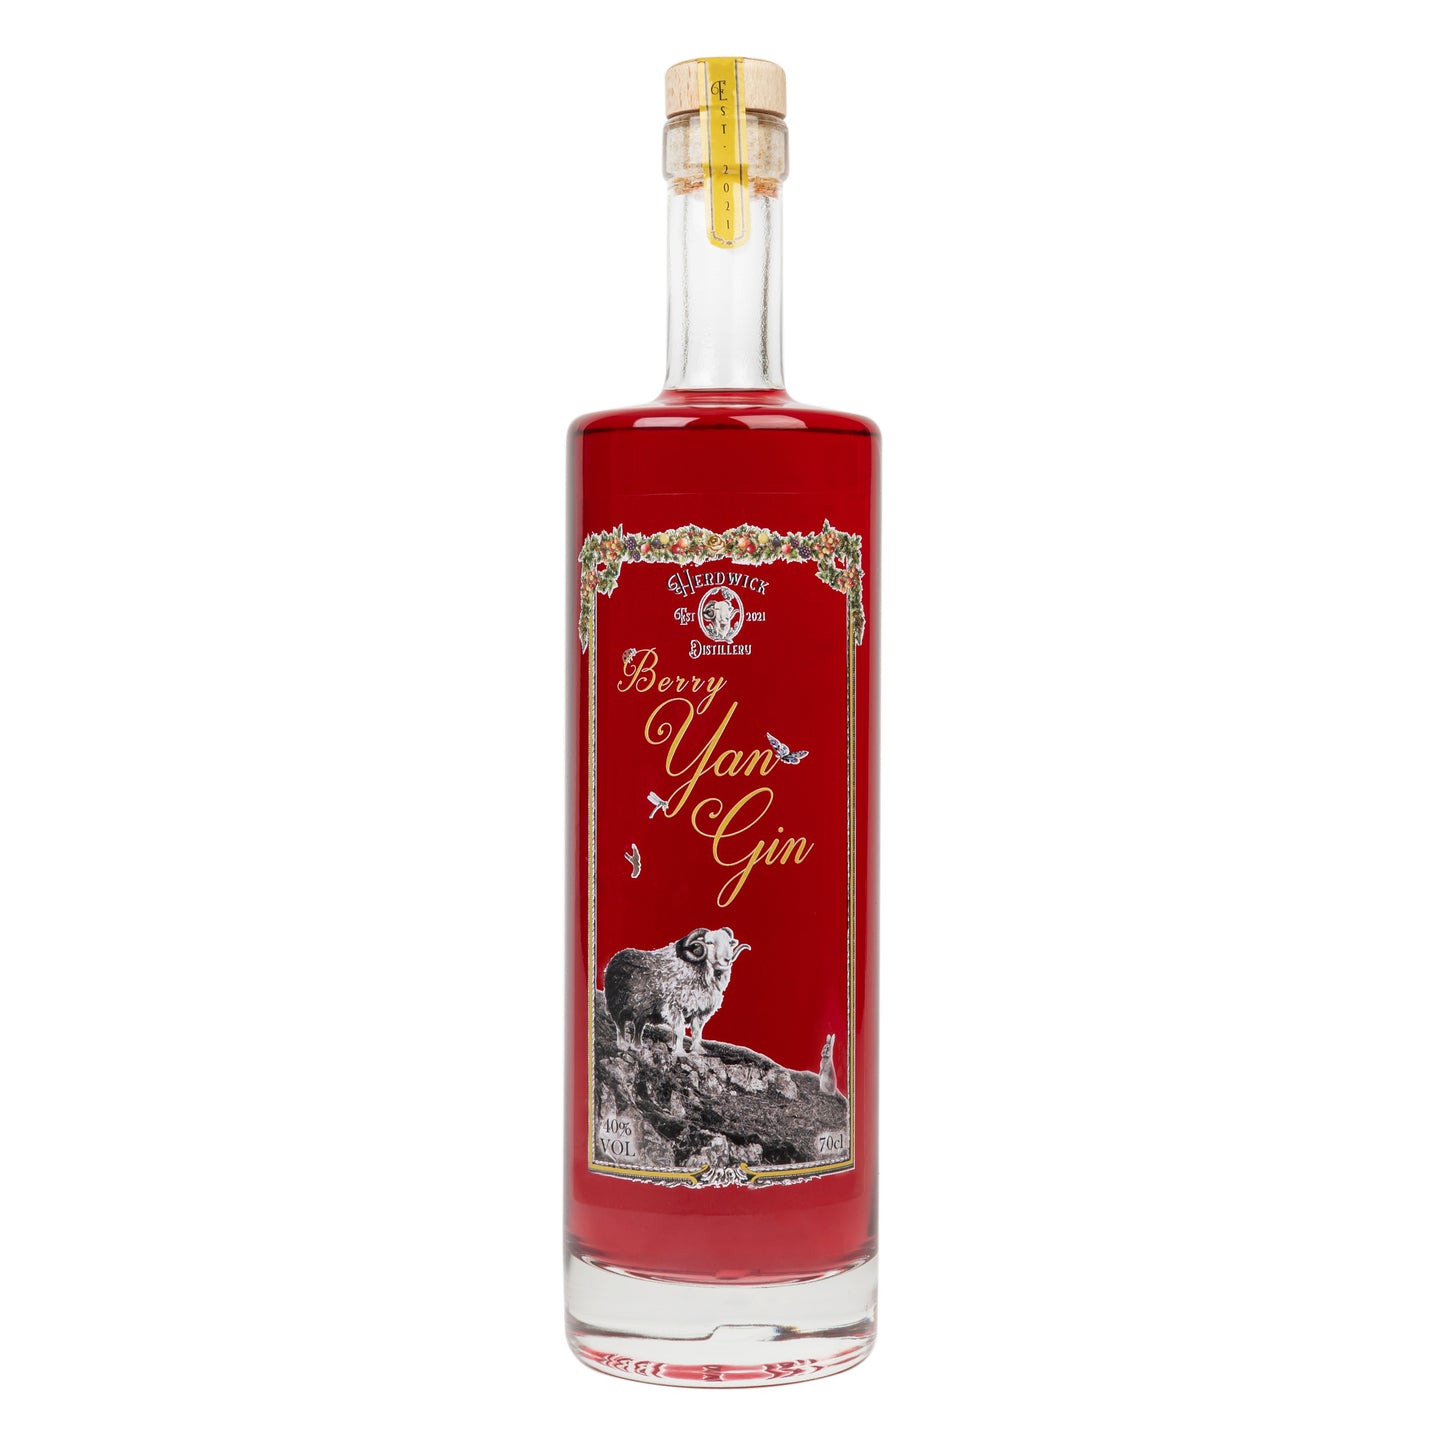 Berry Yan Gin by Herdwick Distillery